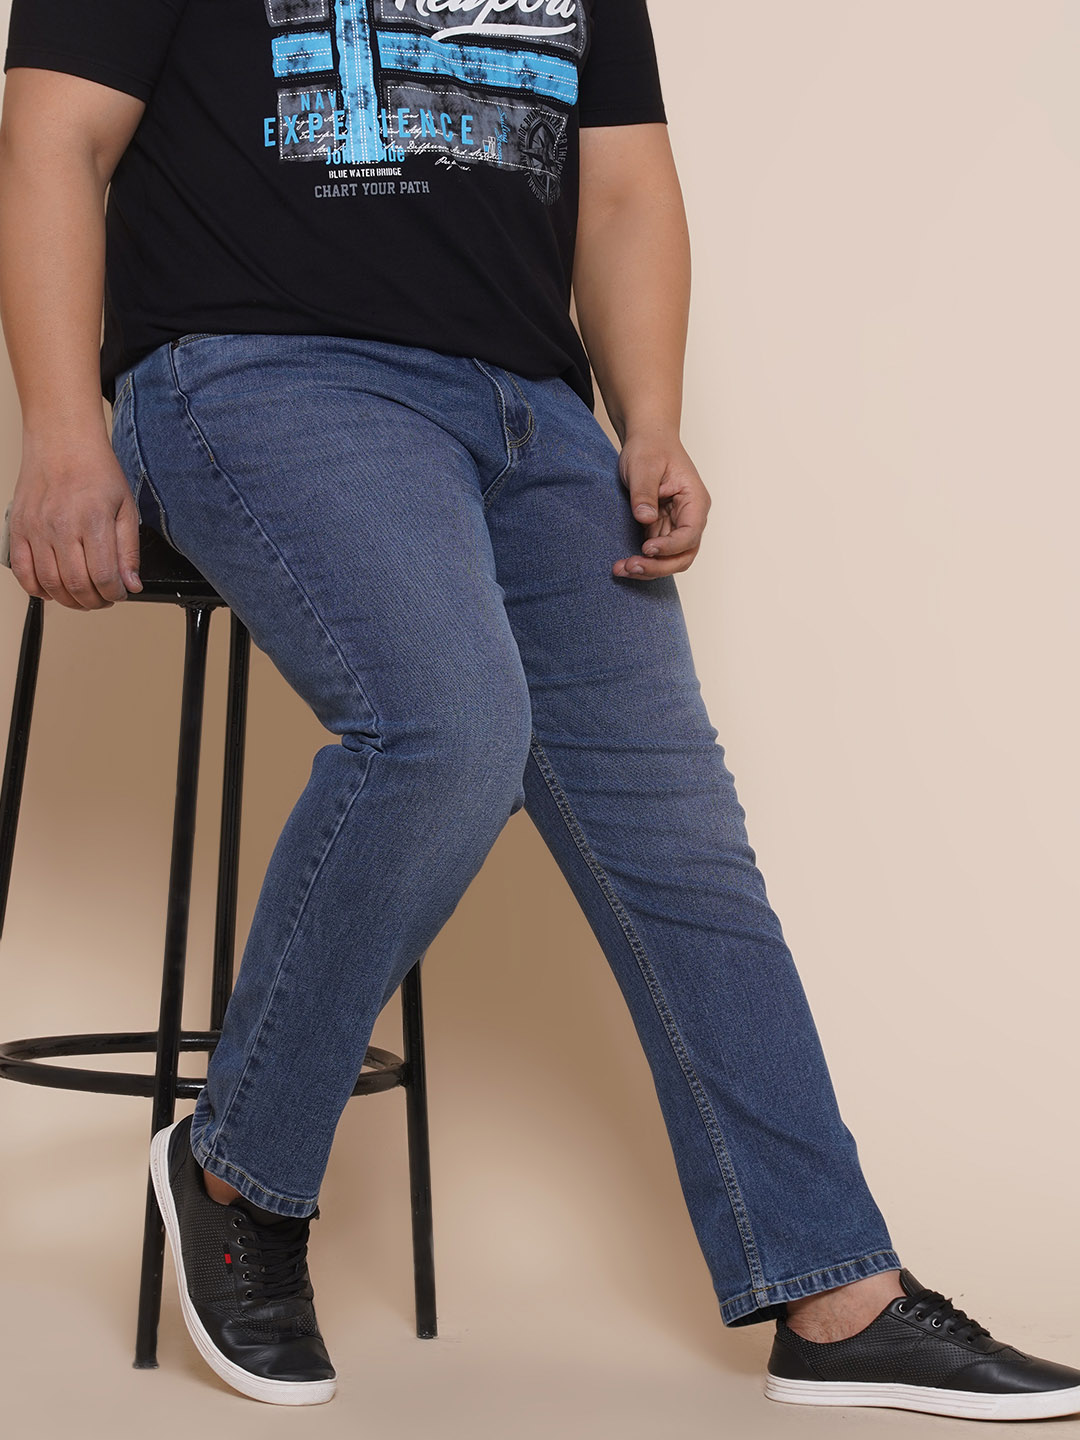 bottomwear/jeans/EJPJ25084/ejpj25084-1.jpg